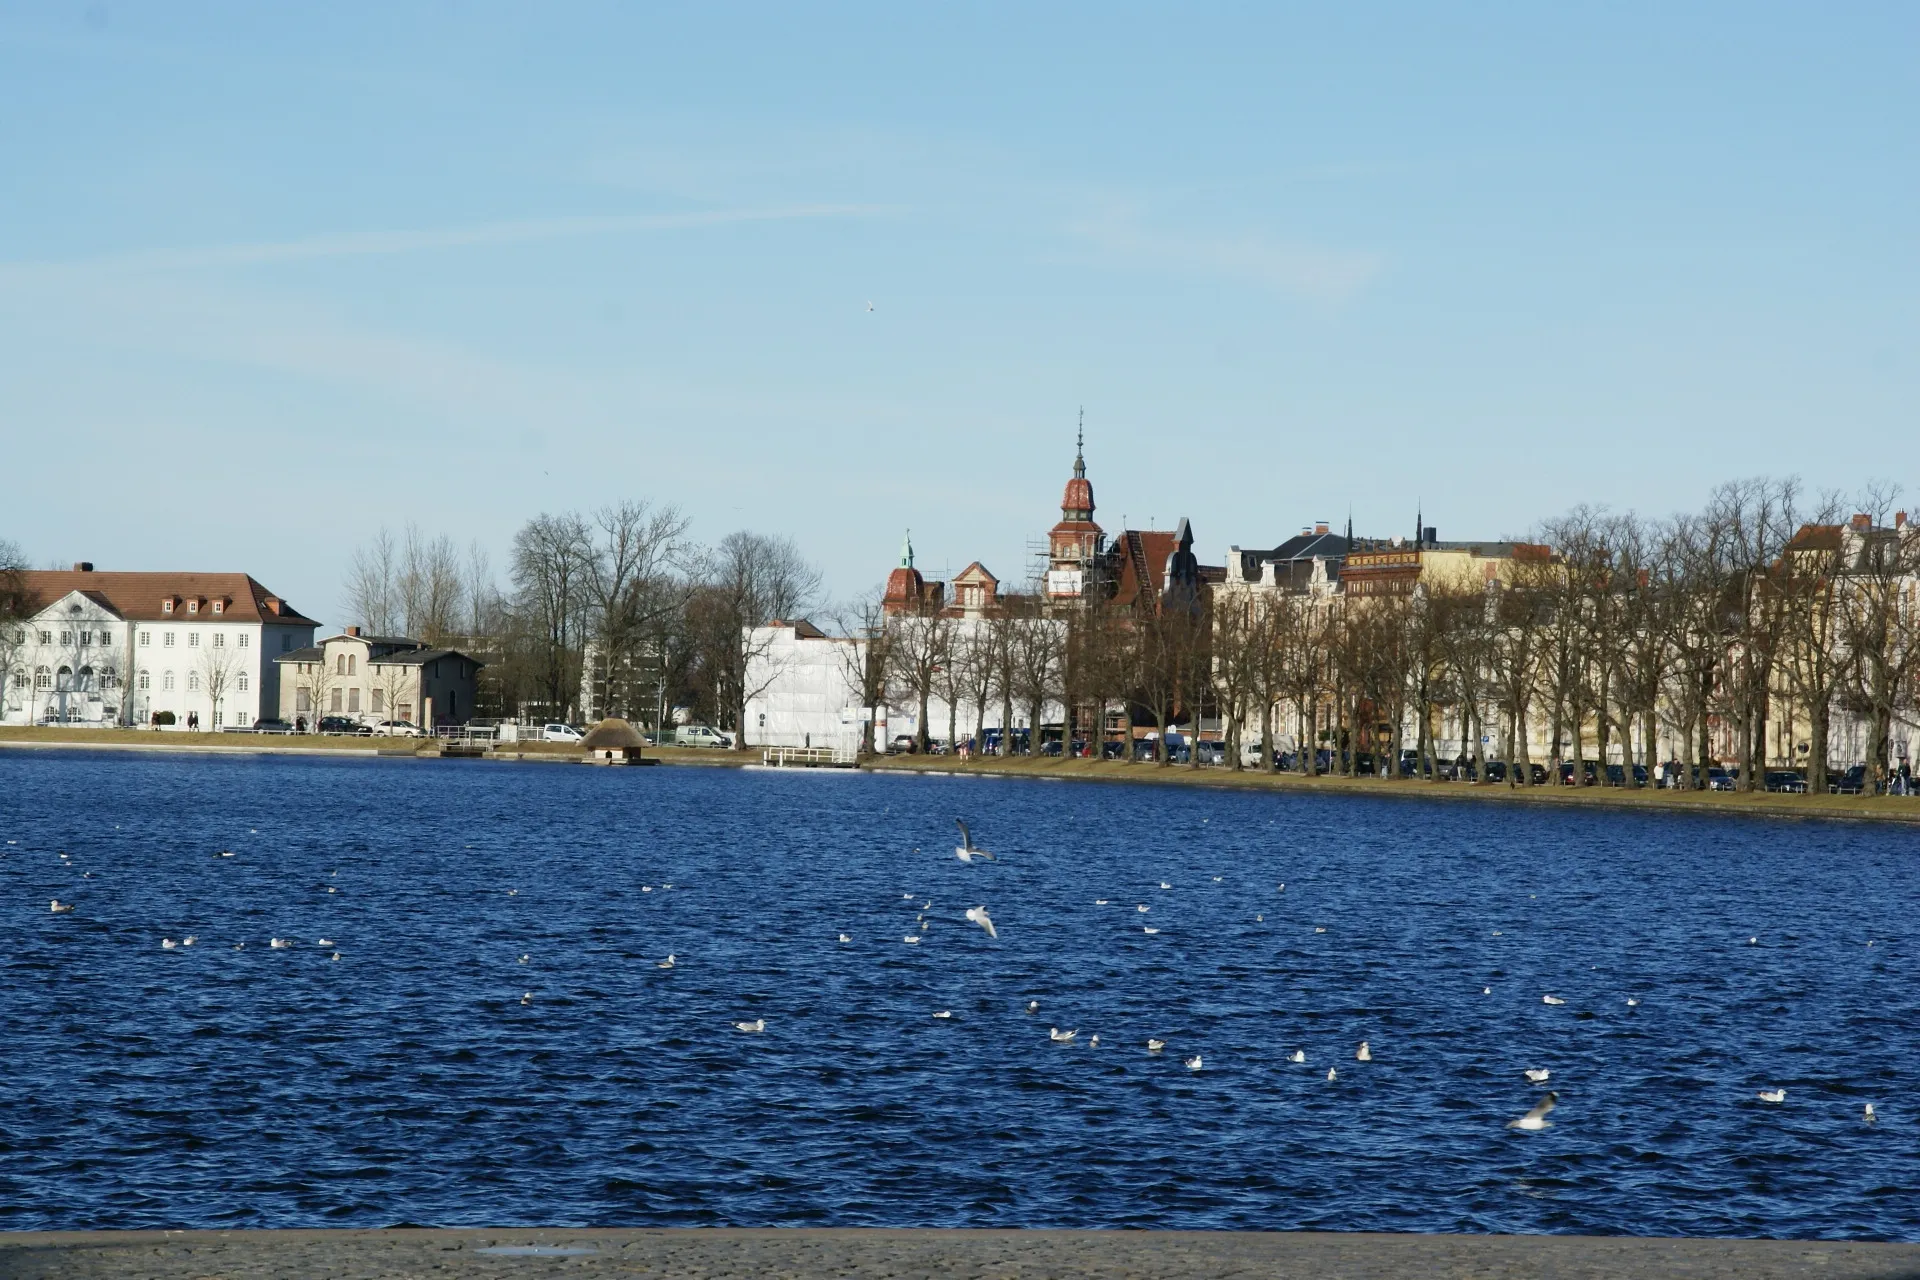 Photo showing: Pfaffenteich (Priest's Pond) in Schwerin, Germany